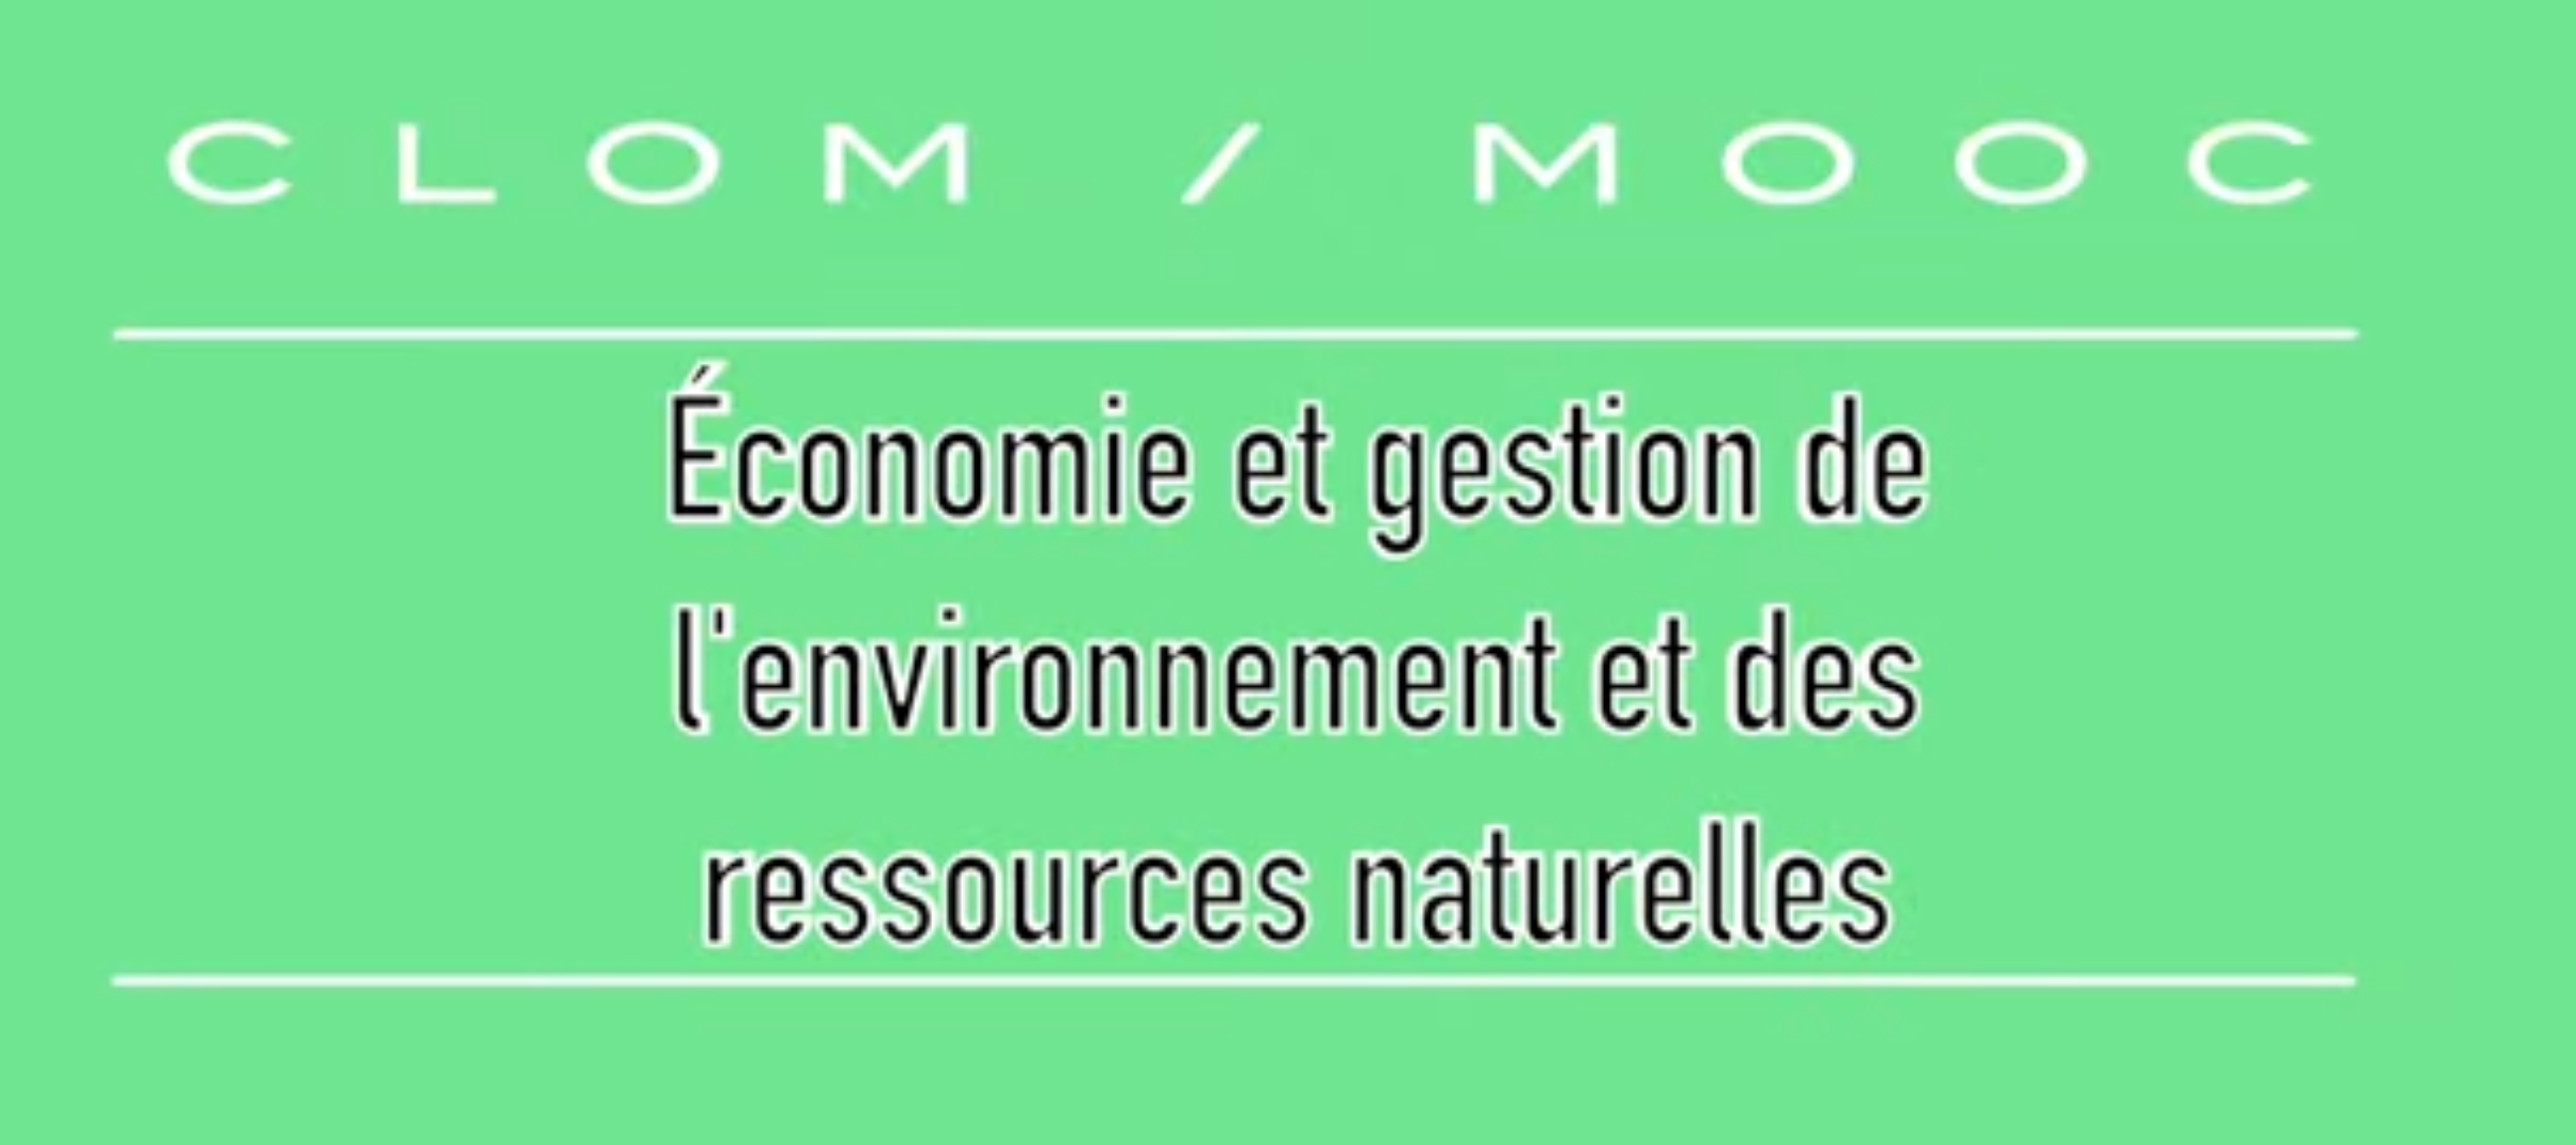 Un cours en ligne de l’IFDD sur l’économie et la gestion de l’environnement et des ressources naturelles